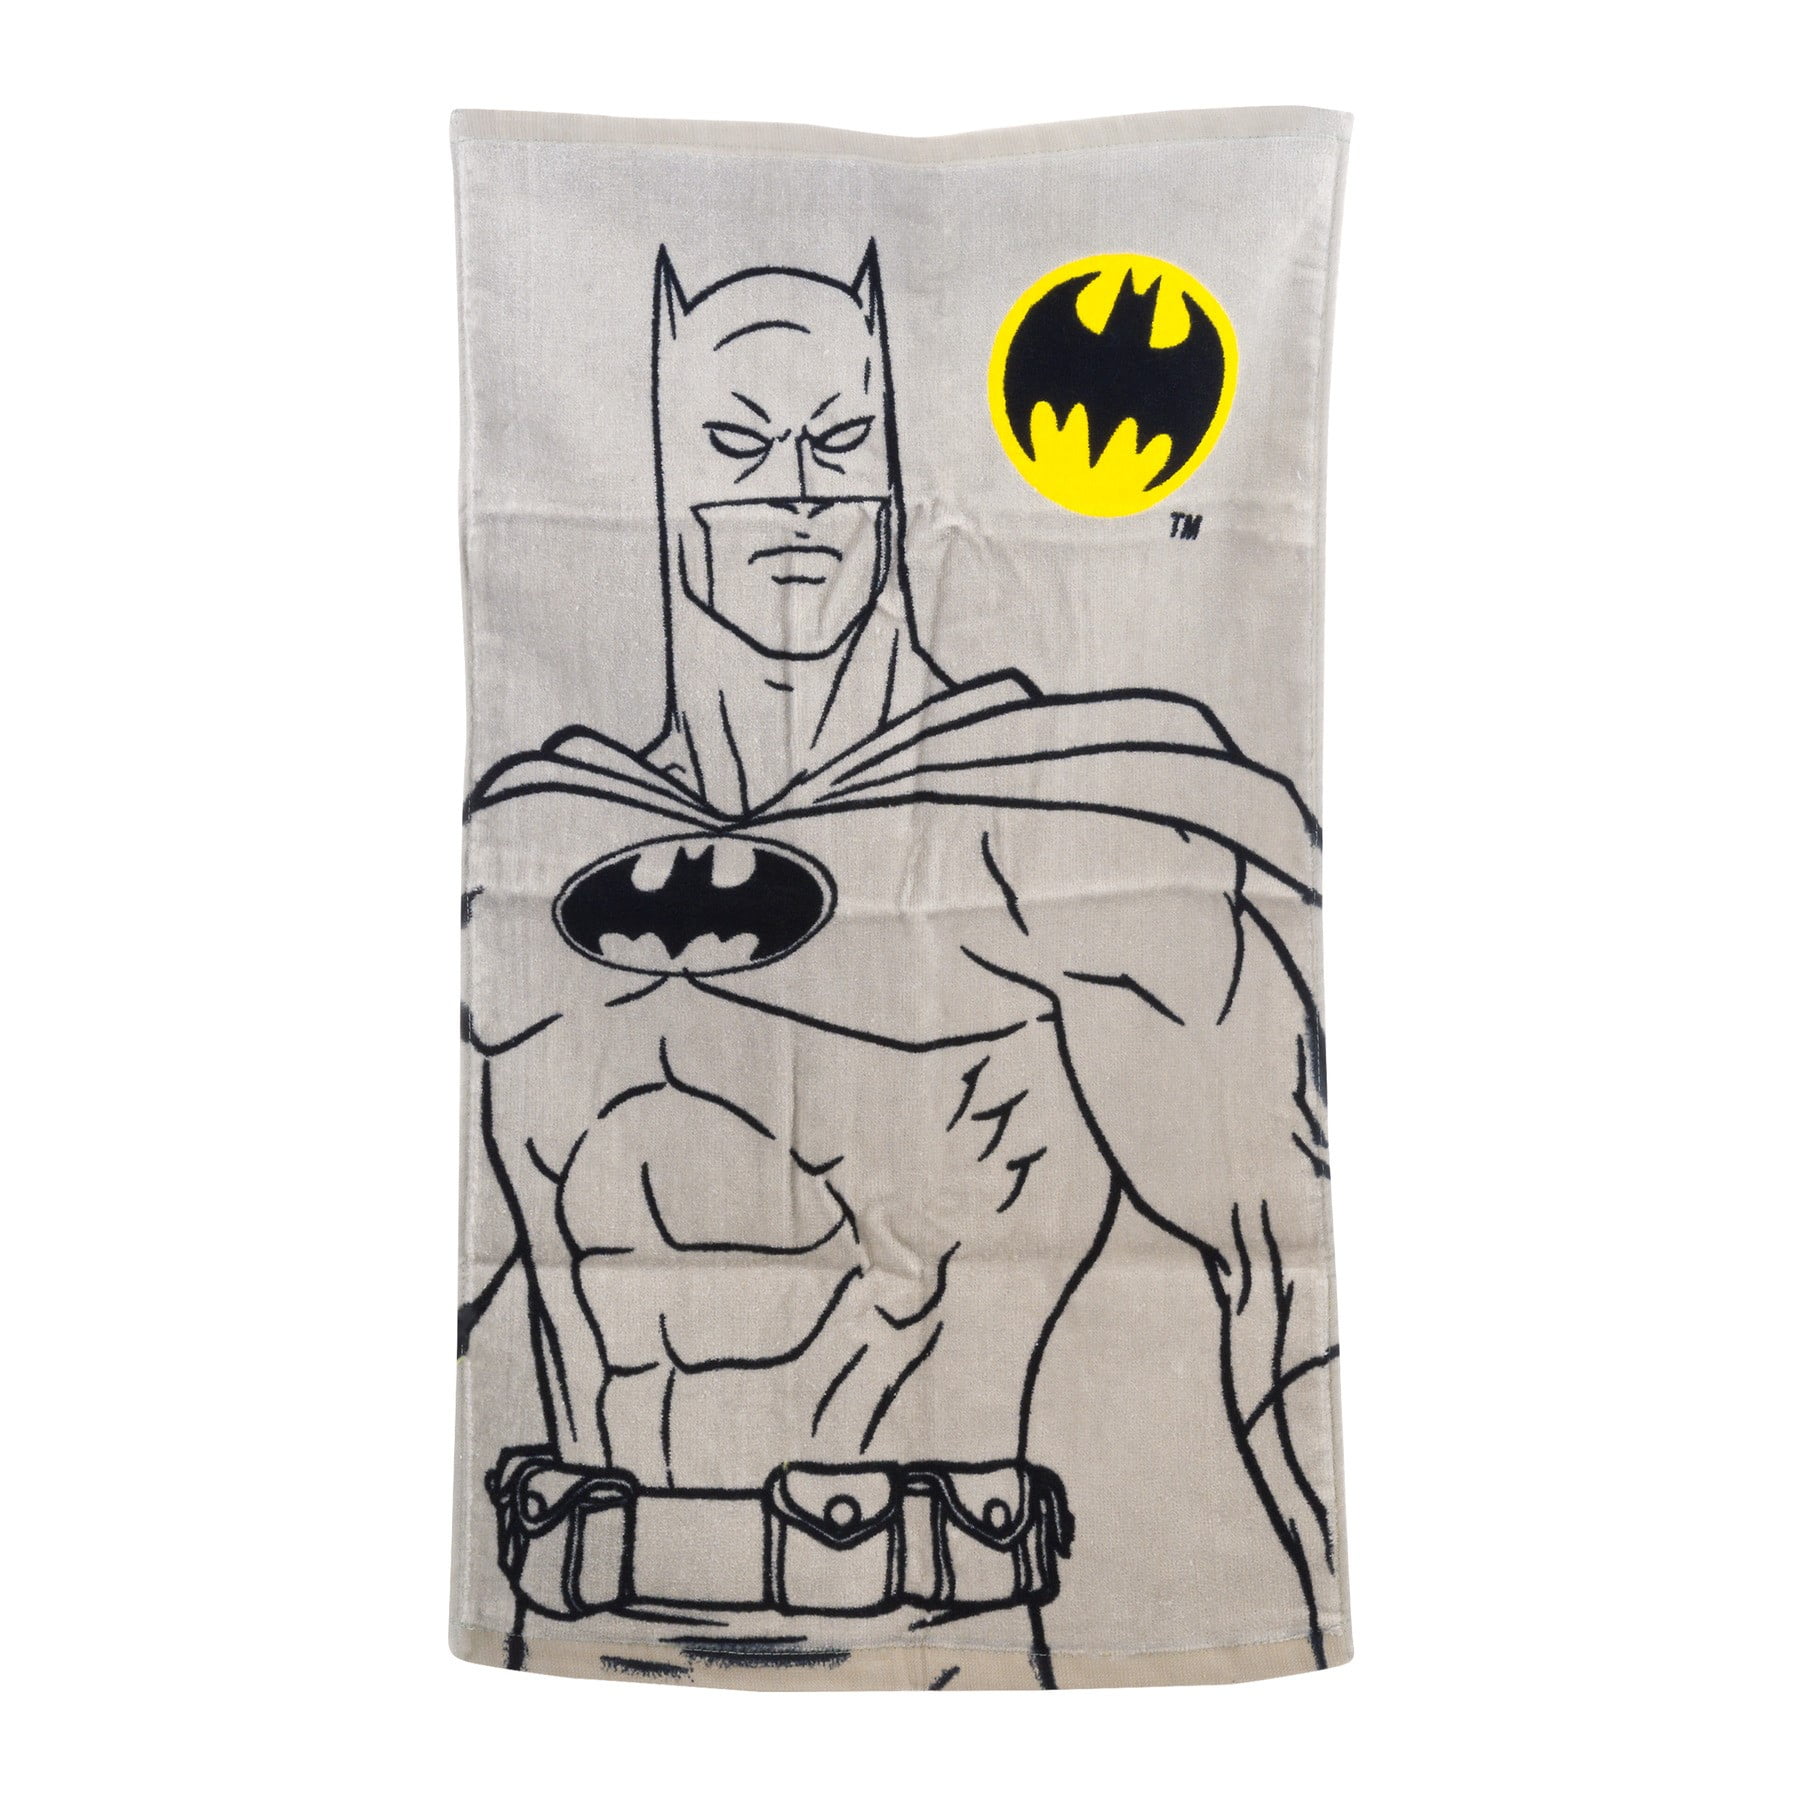 Details about   Licensed 2013 Batman Emblem Beach Towel  28x58 Inches DC Comics 